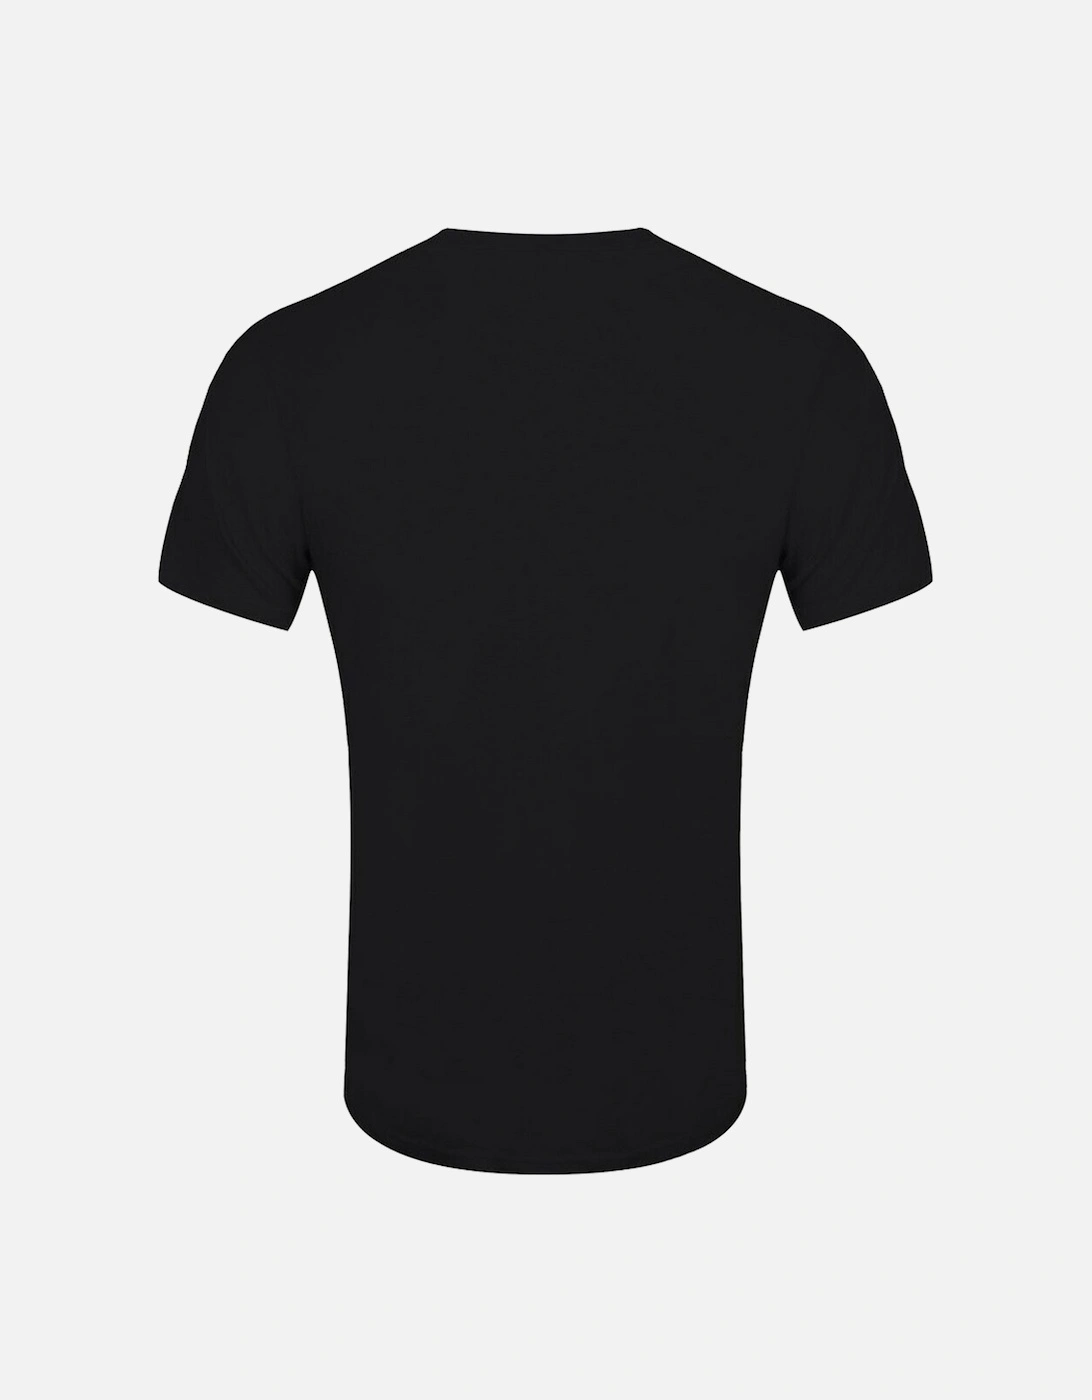 Unisex Adult Nouveau Reaper T-Shirt